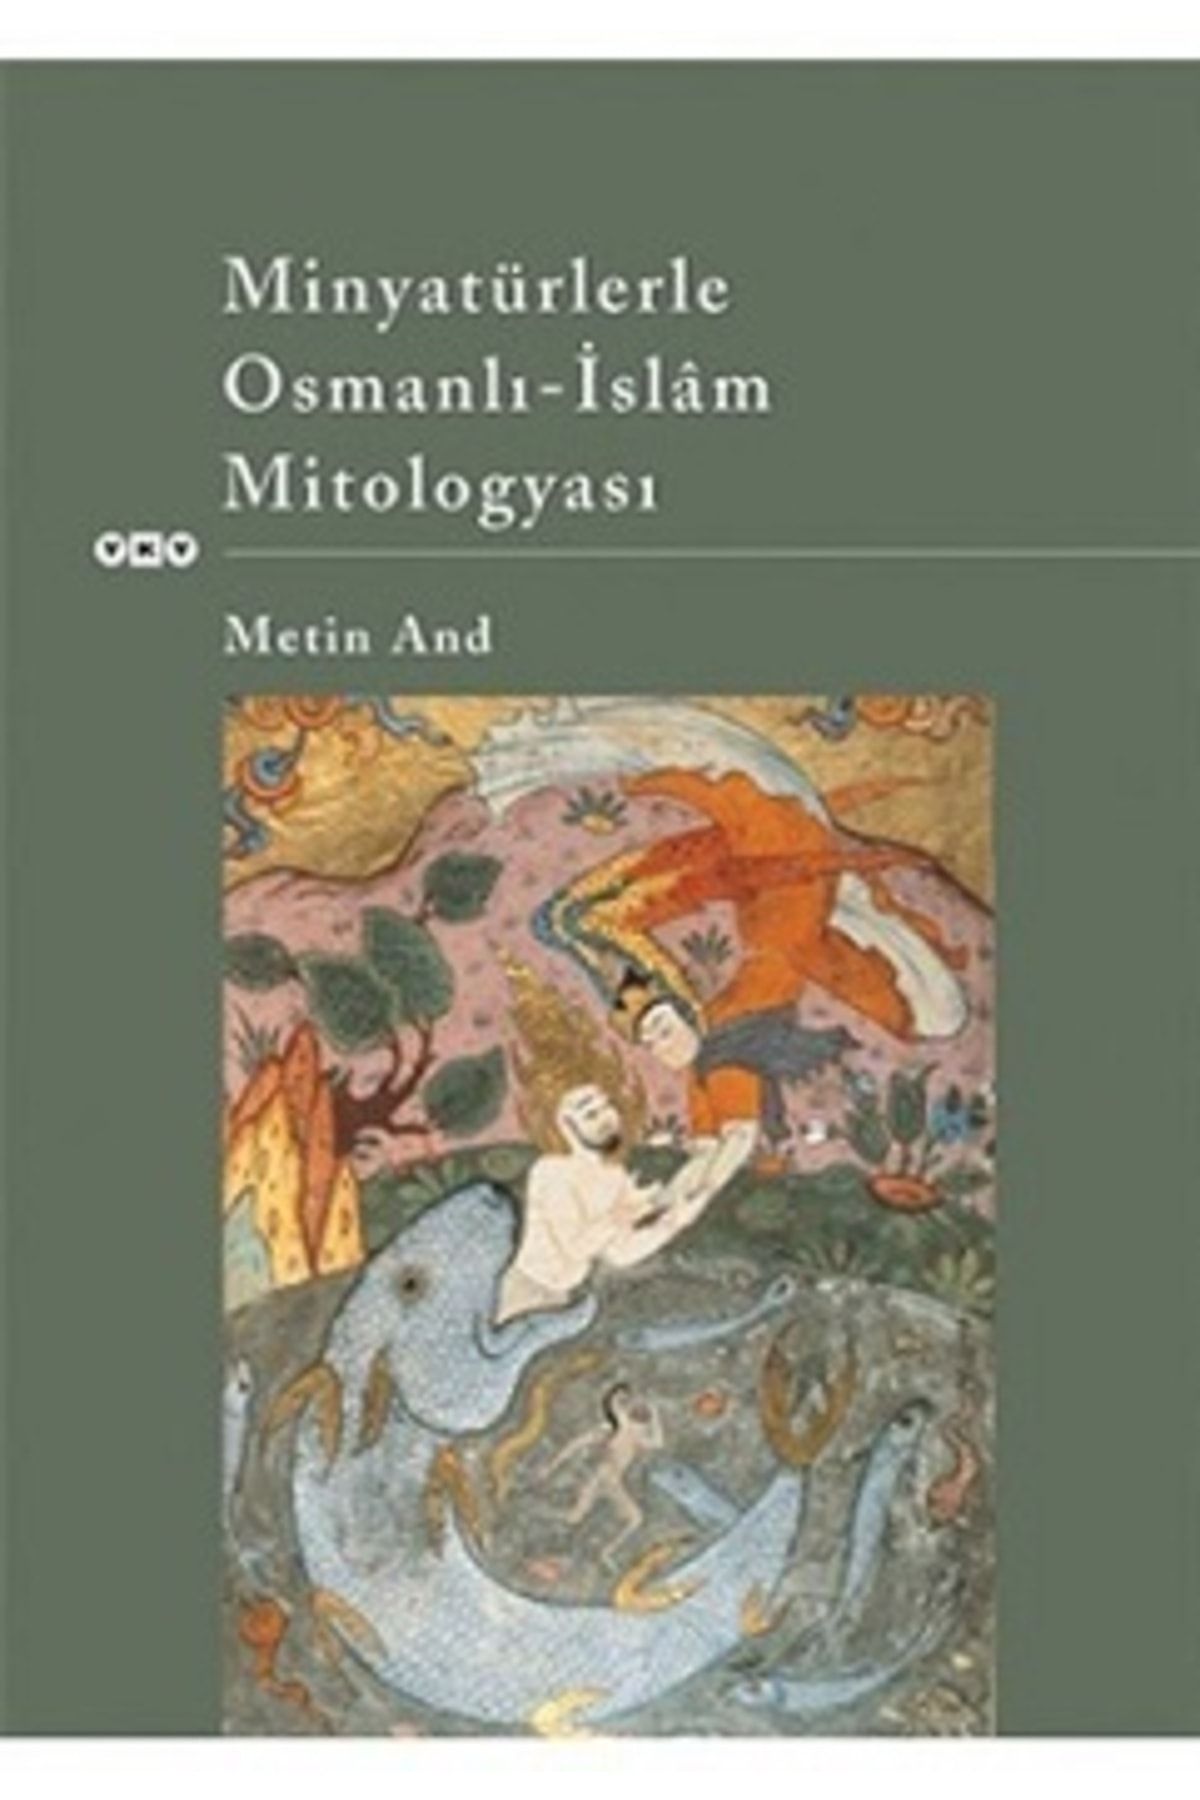 Yapı Kredi Yayınları Minyatürlerle Osmanlı İslam Mitologyası kitabı - Metin And - Yapı Kredi Yayınları